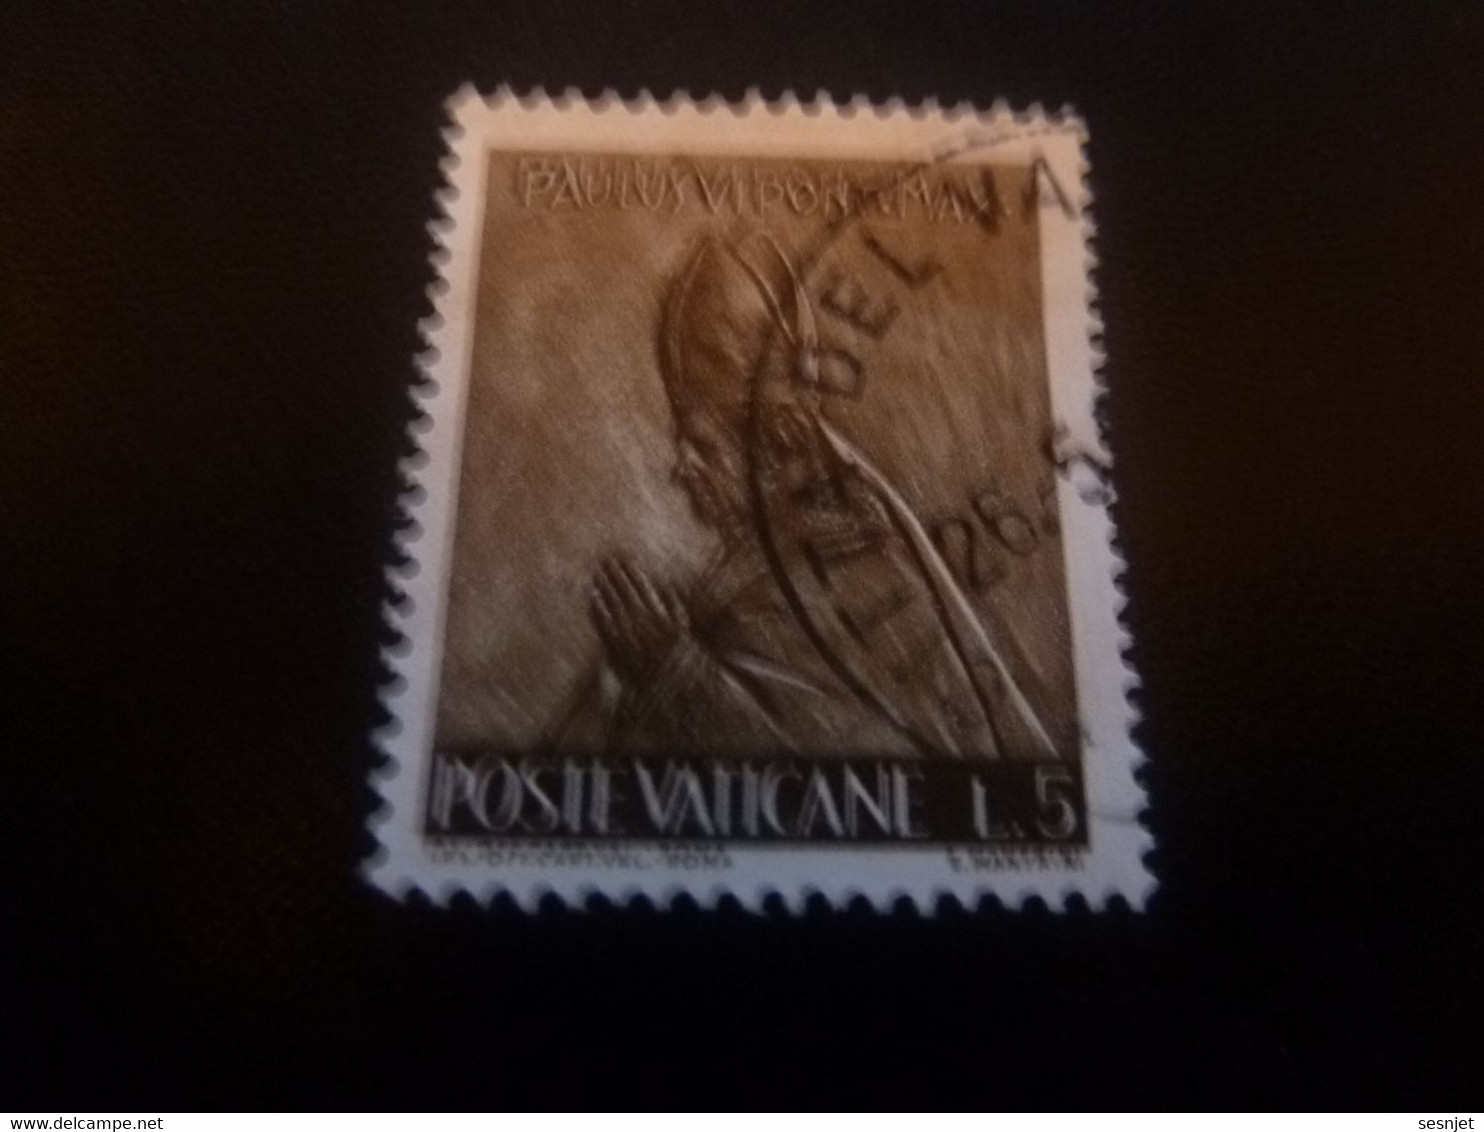 Poste Vaticane - Paulus VI -  Pont-Max - L 5 -  Gris - Oblitéré - Année 1960 - - Used Stamps